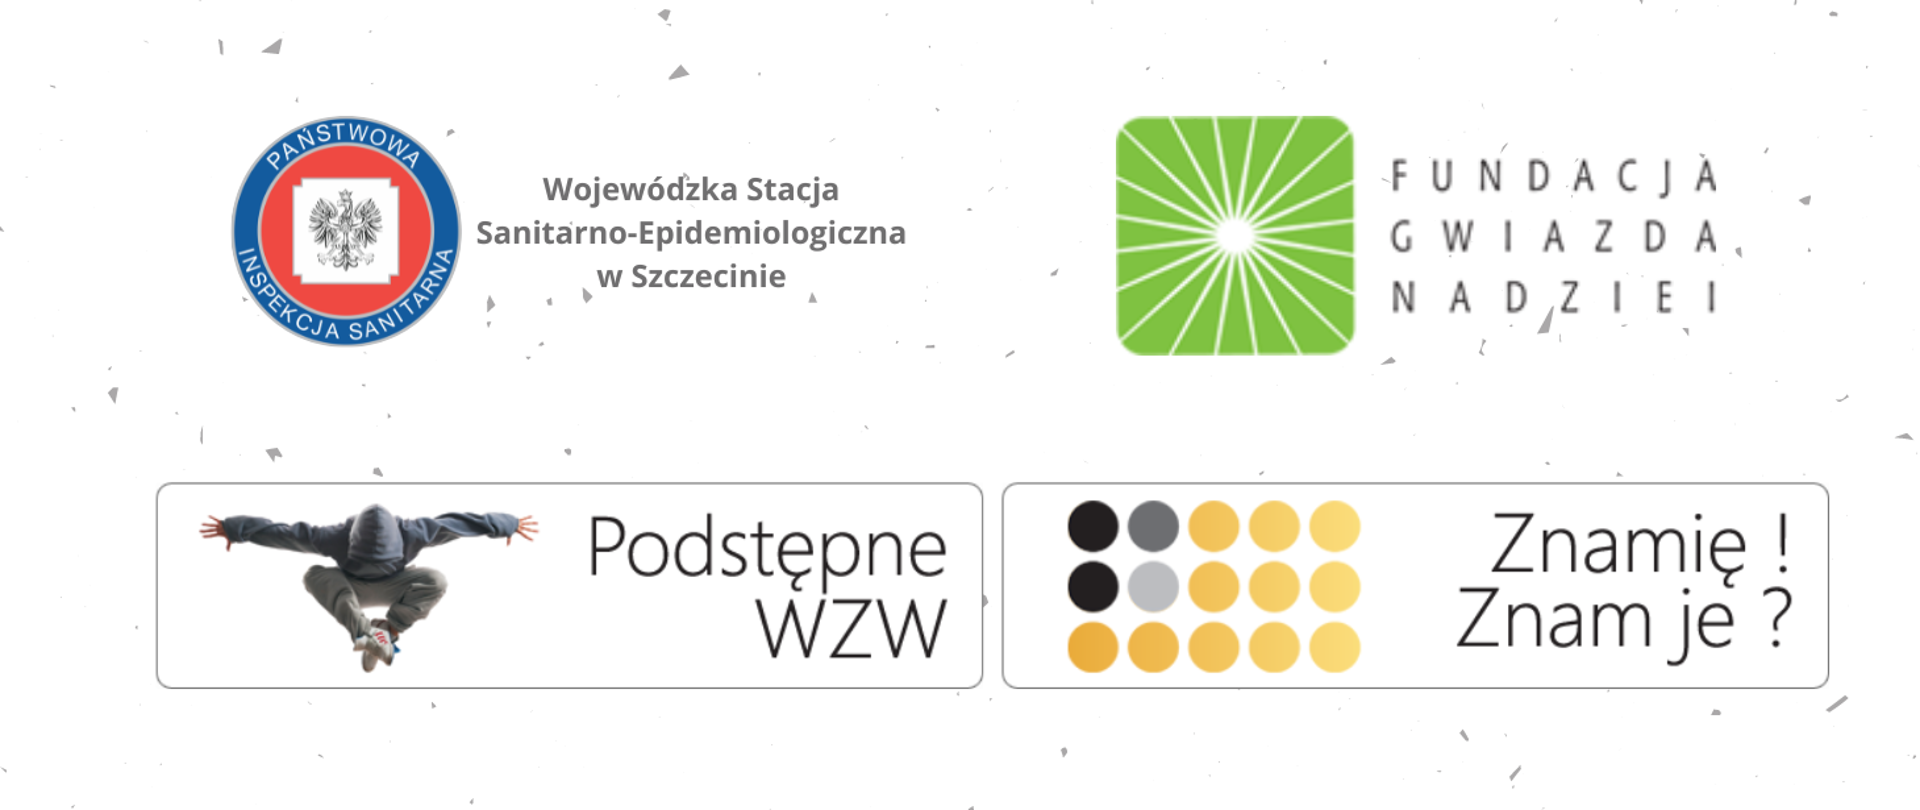 Grafika przedstawia loga Państwowej Inspekcji Sanitarnej, Fundacji Gwiazda Nadziei oraz programów „Znamię! Znam je?” „Podstępne WZW”.